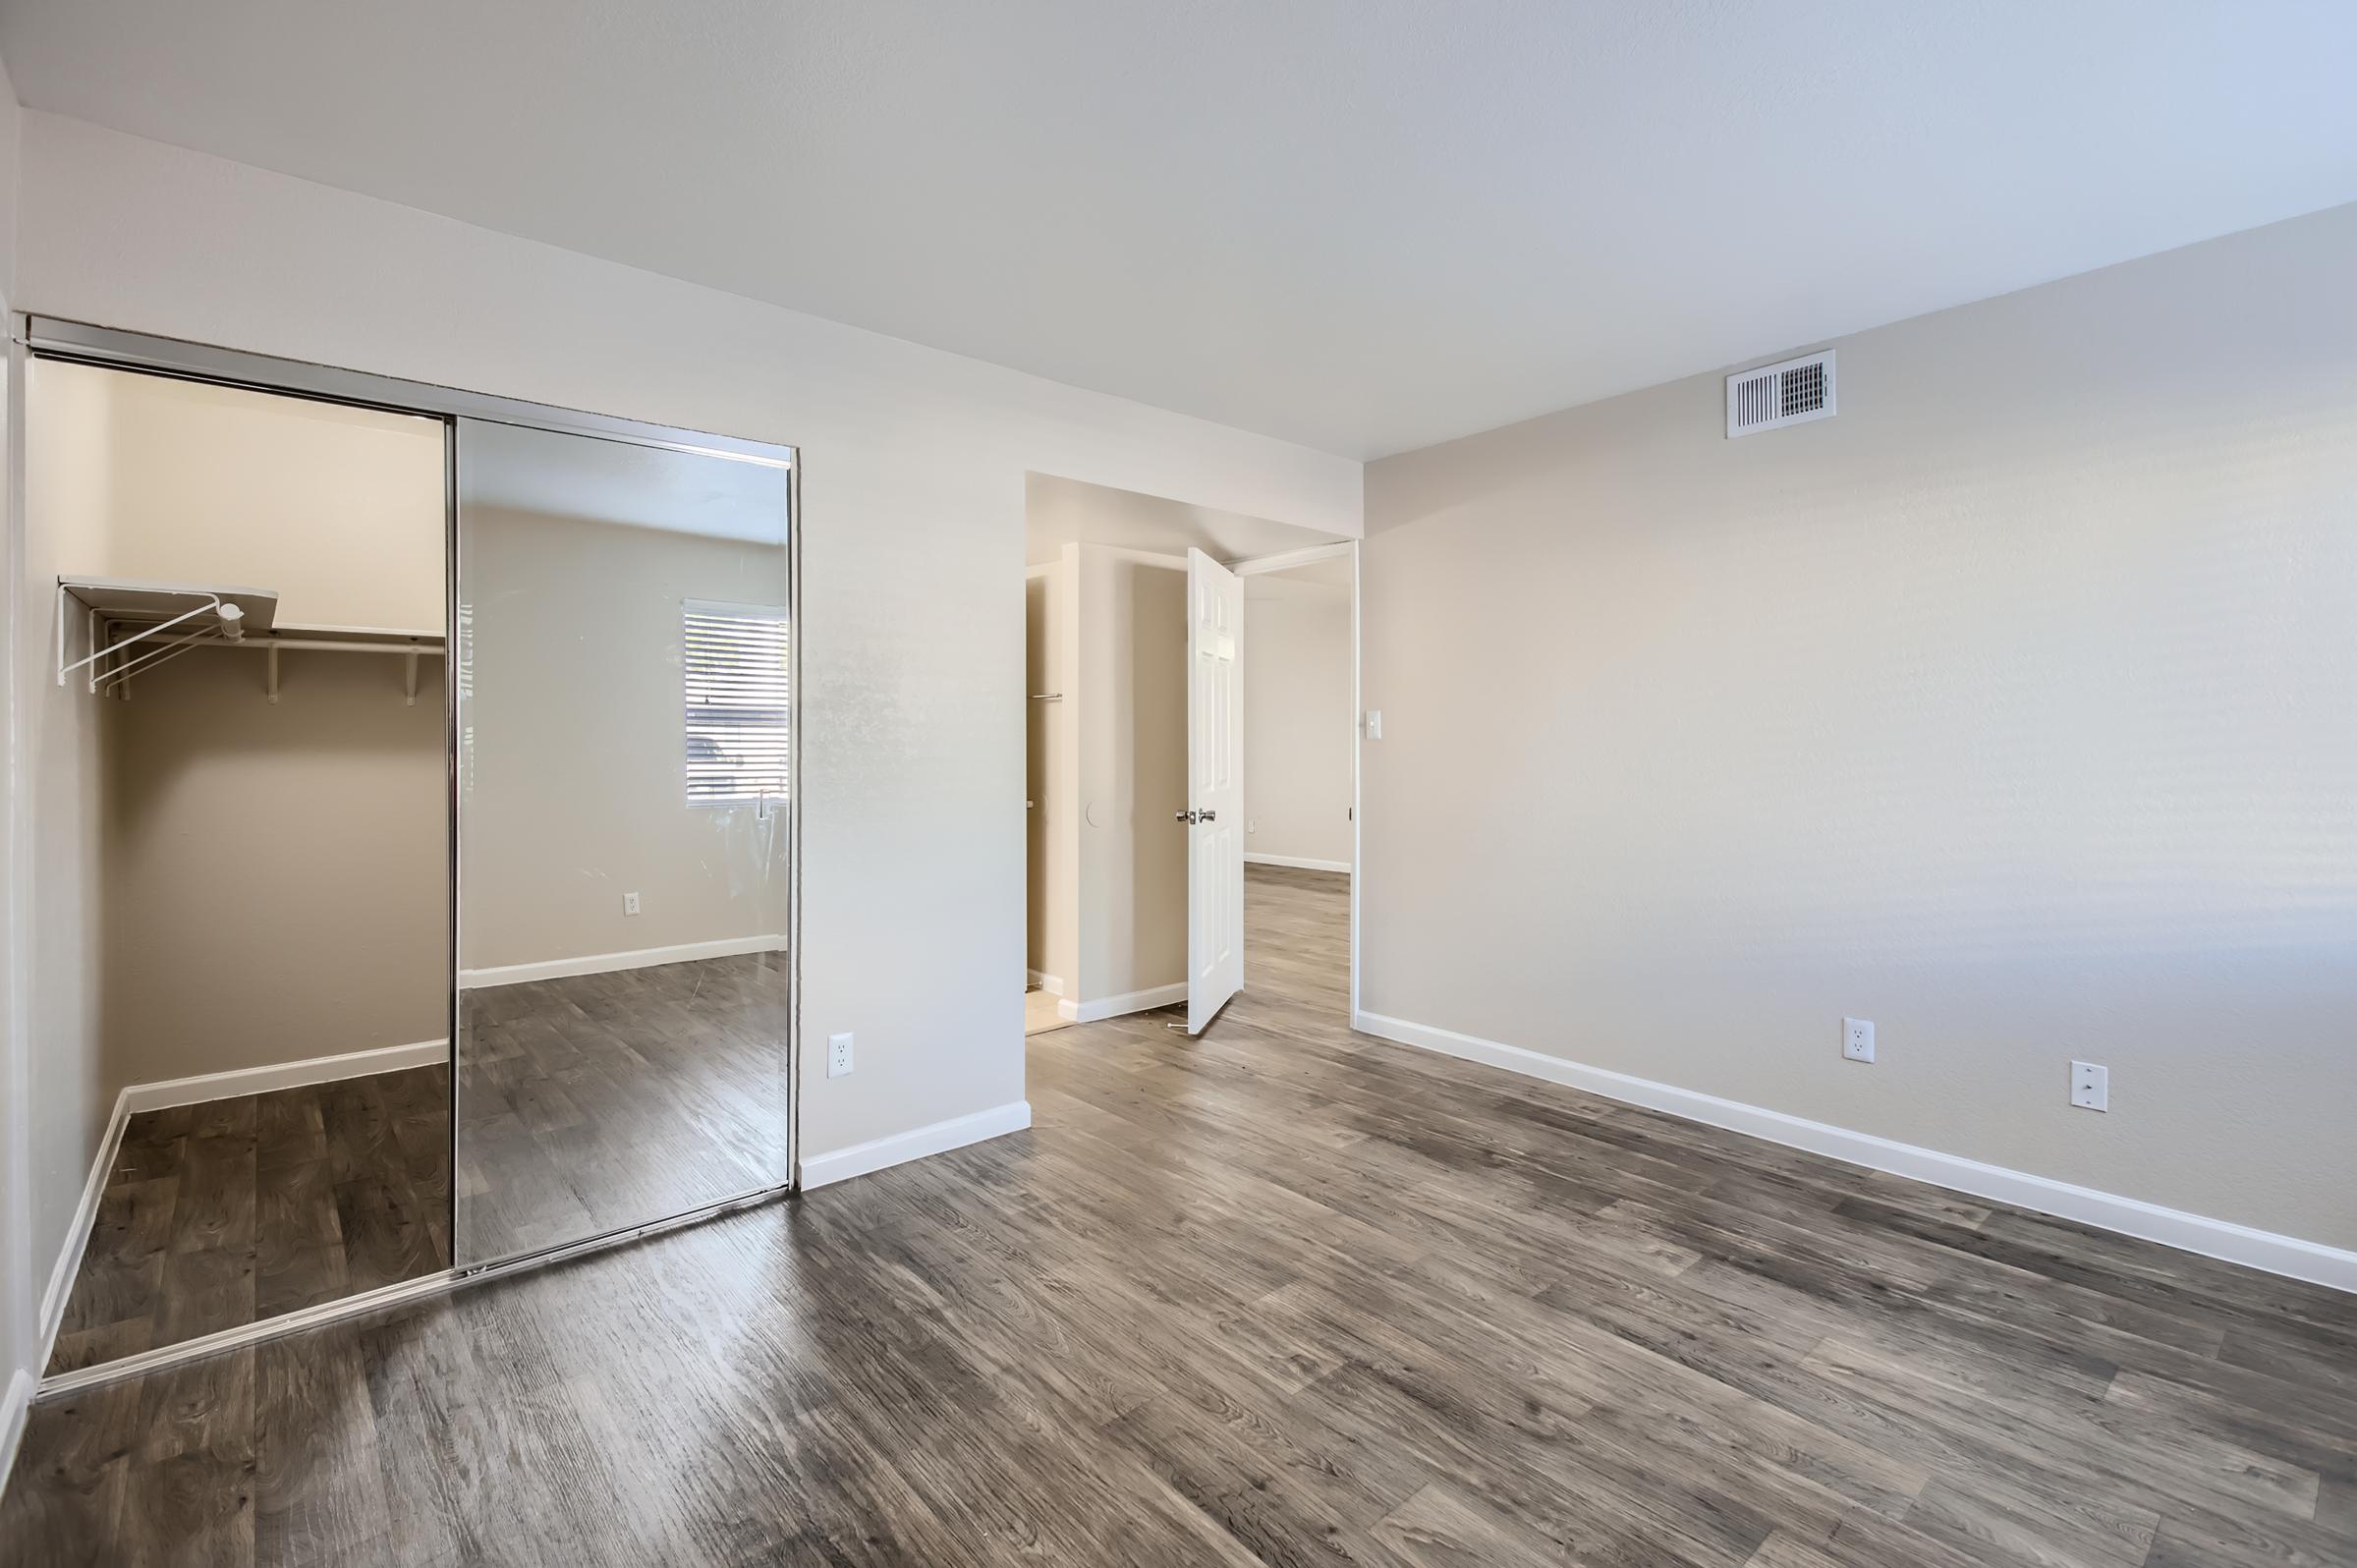 Phoenix apartment bedroom with a wooden floor, mirrored closet door and another door to the hallway